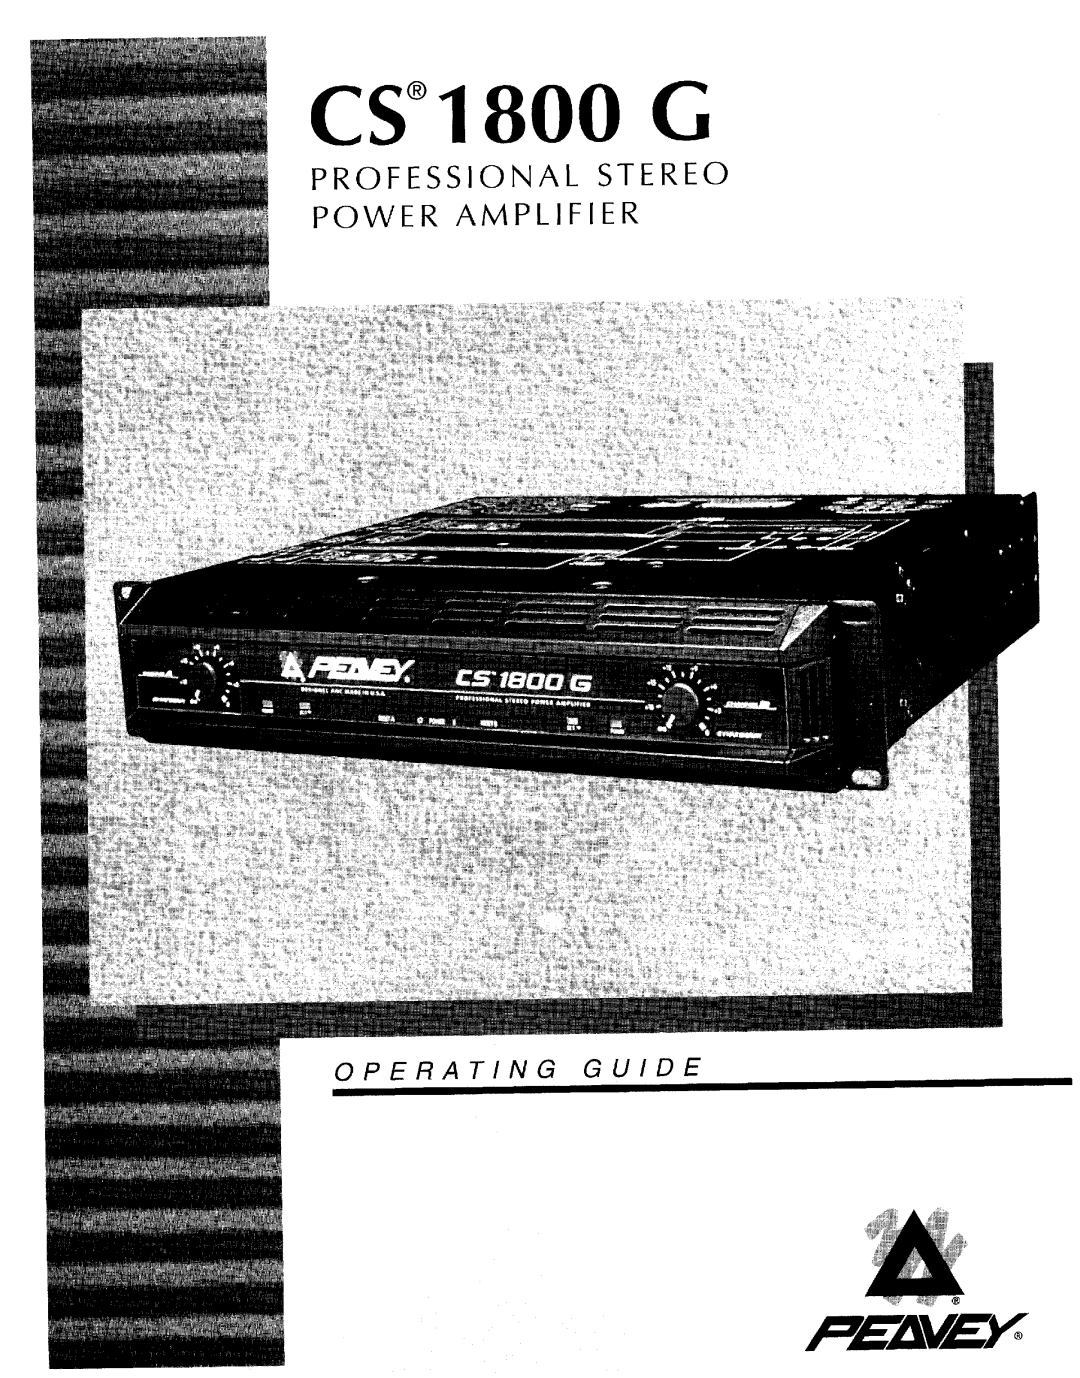 Peavey CS 1800G manual 